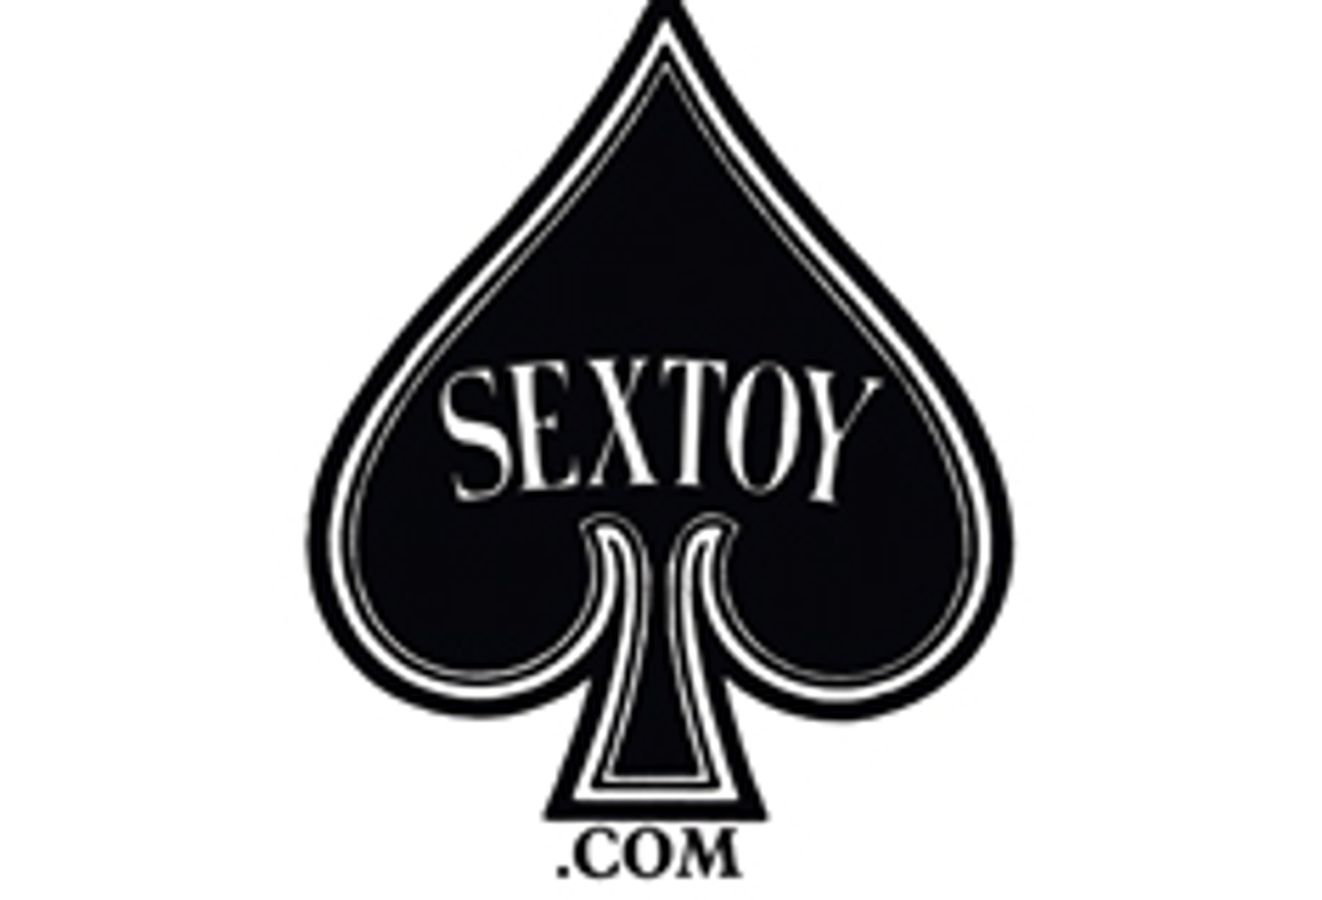 Sextoy.com